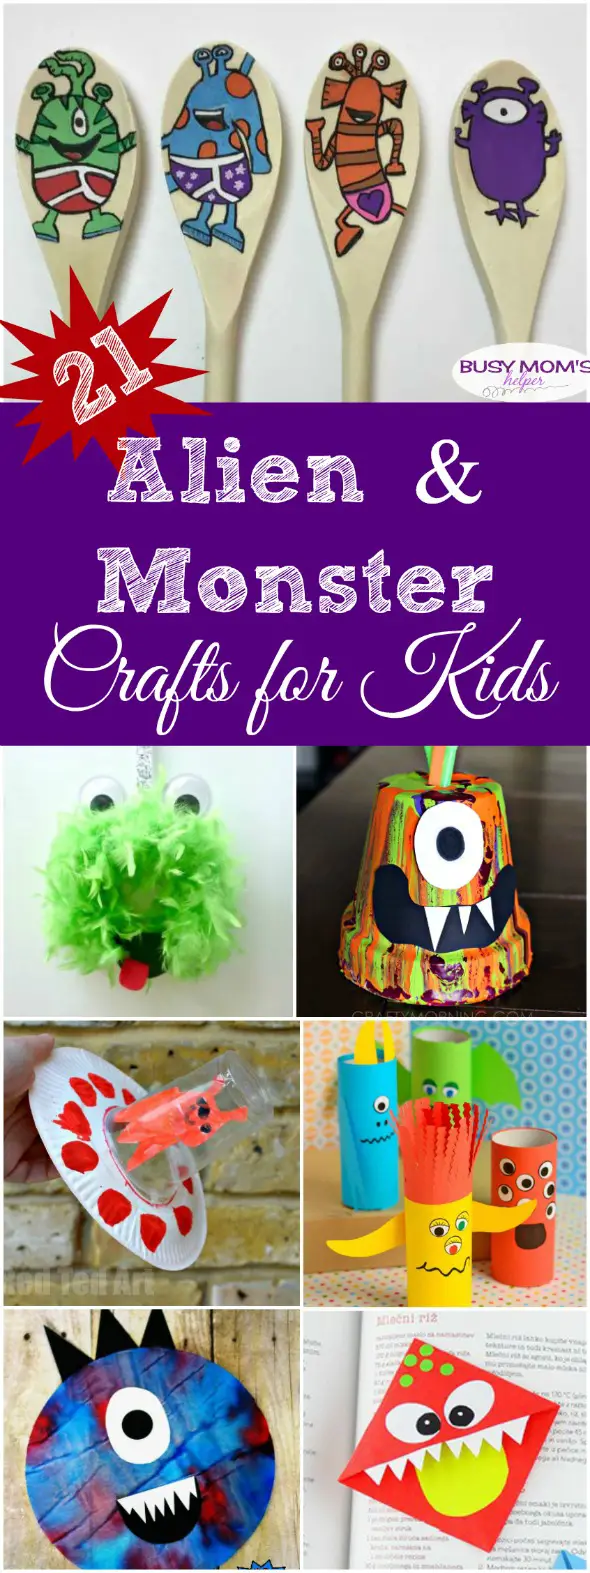 21 Alien and Monster Crafts for Kids #kidcrafts #aliens #monsters #craftsforkids